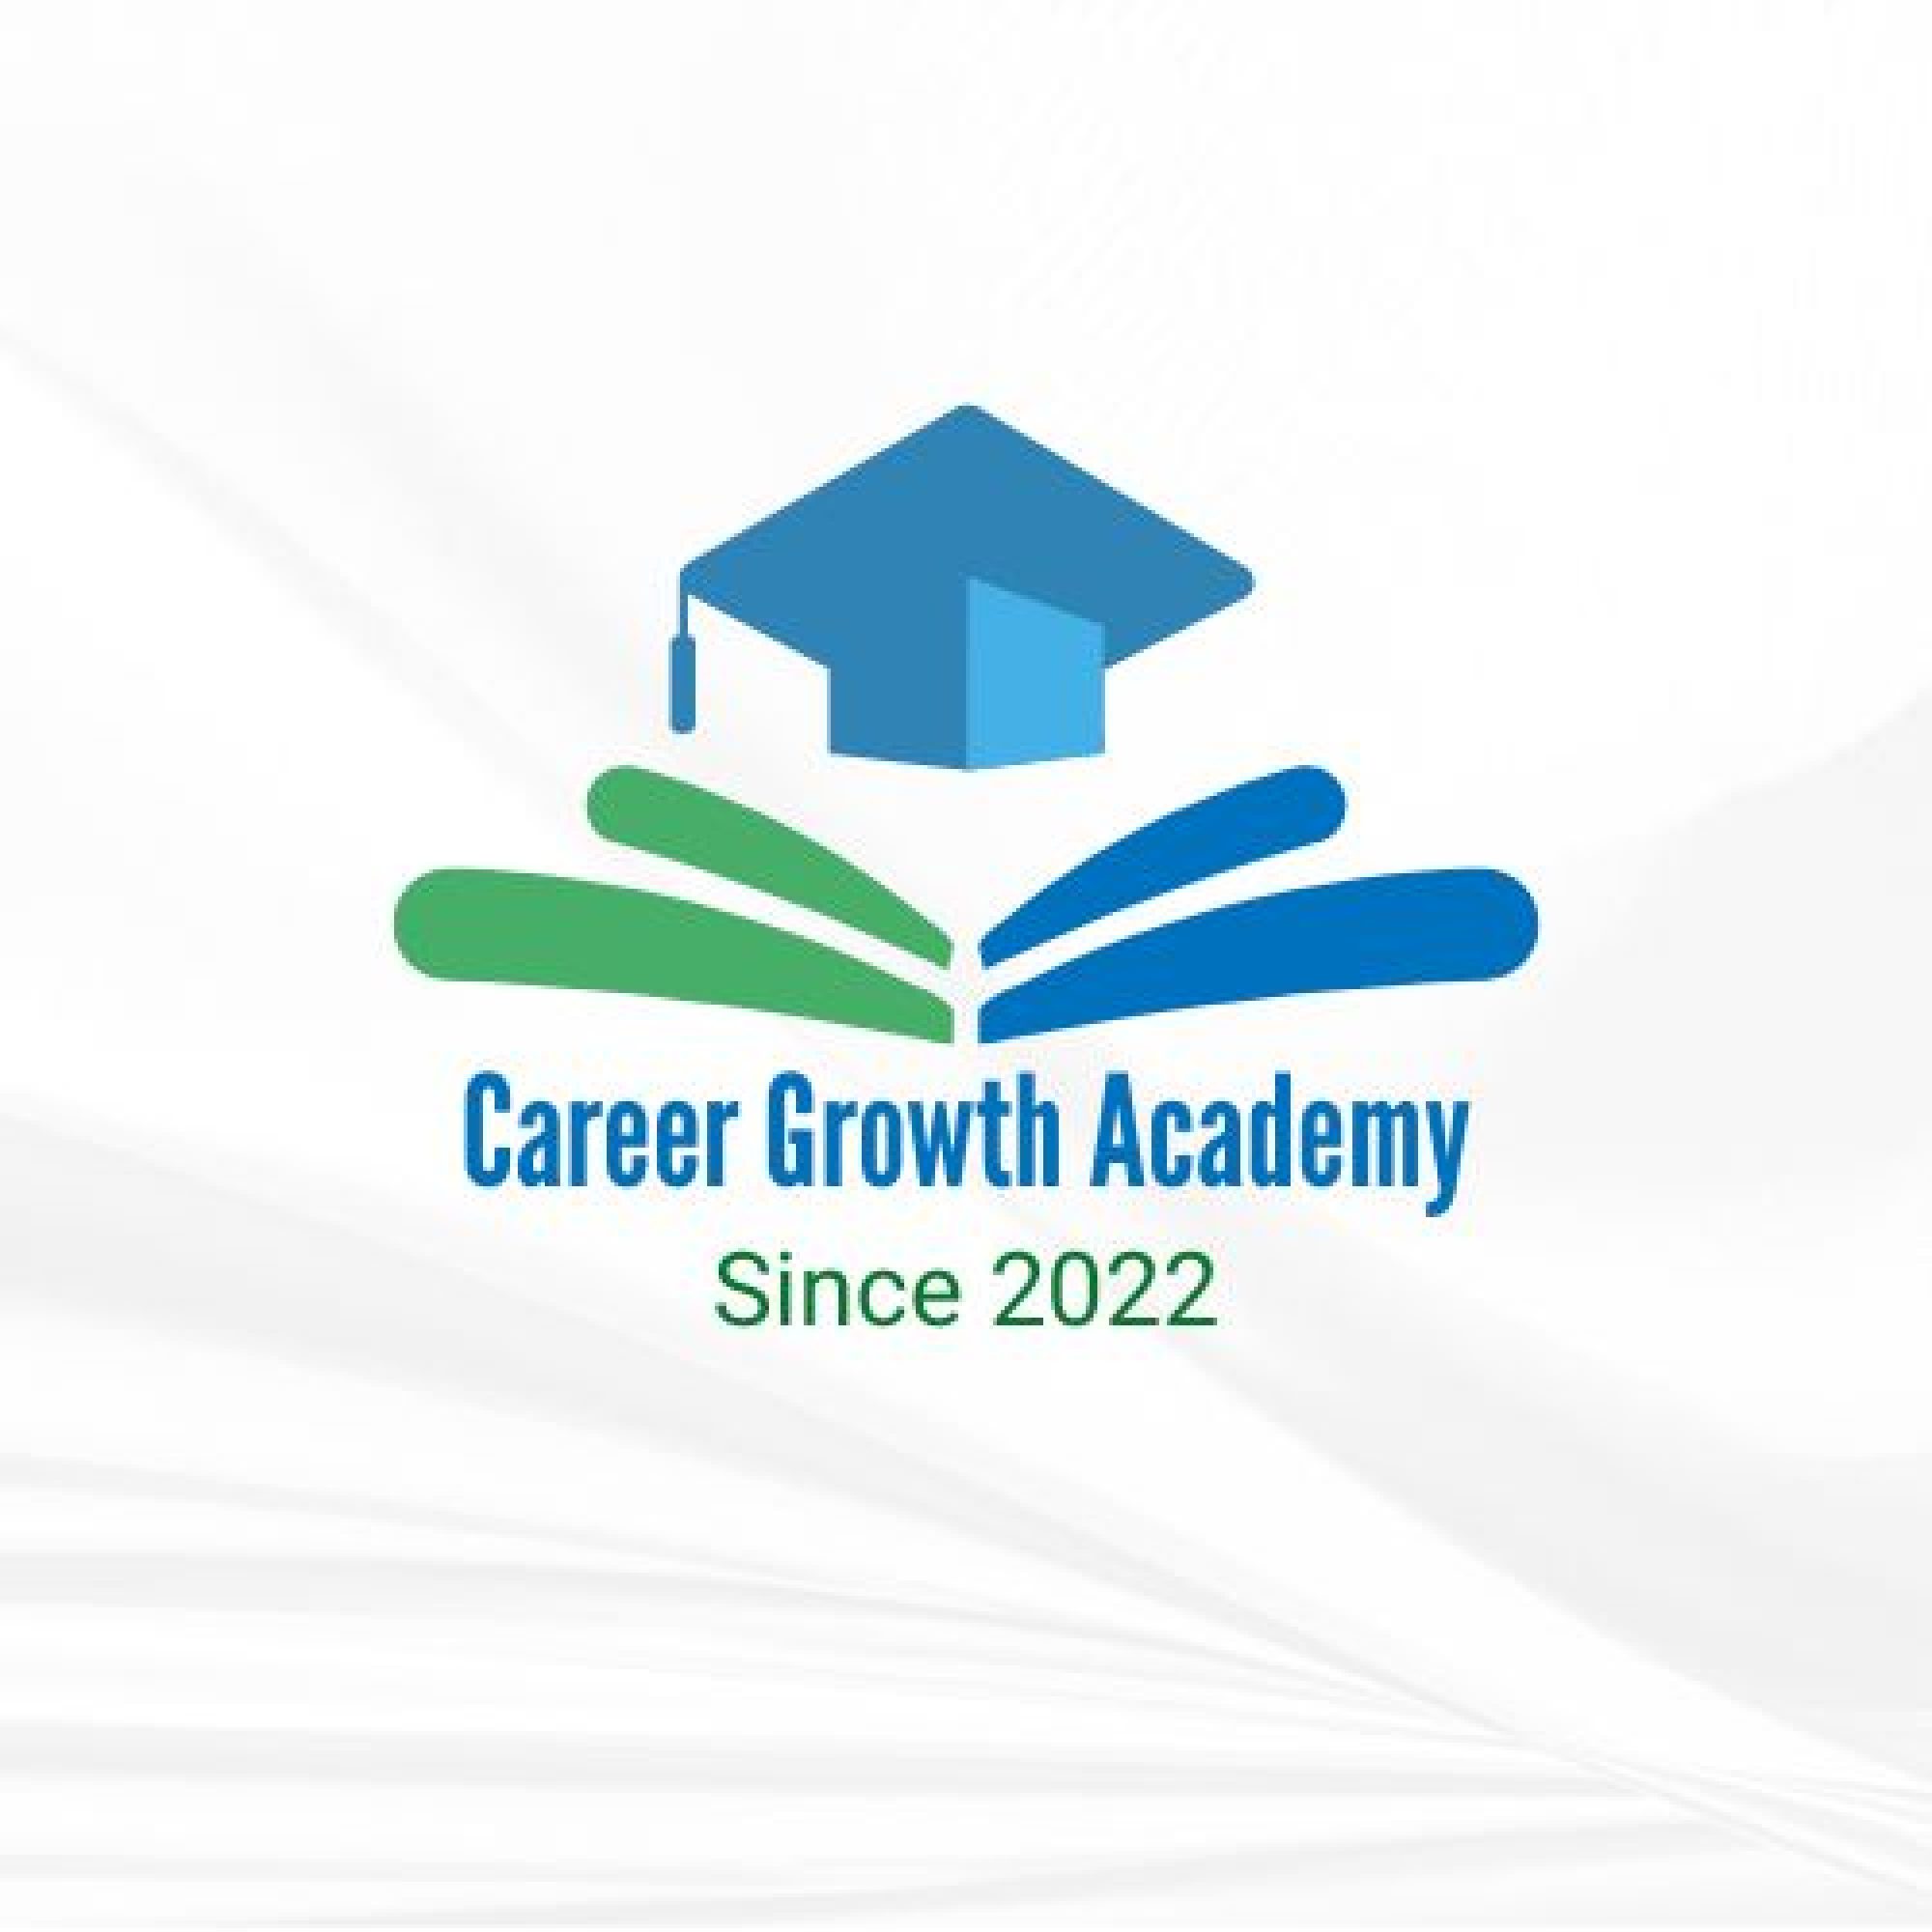 Career Growth Academy